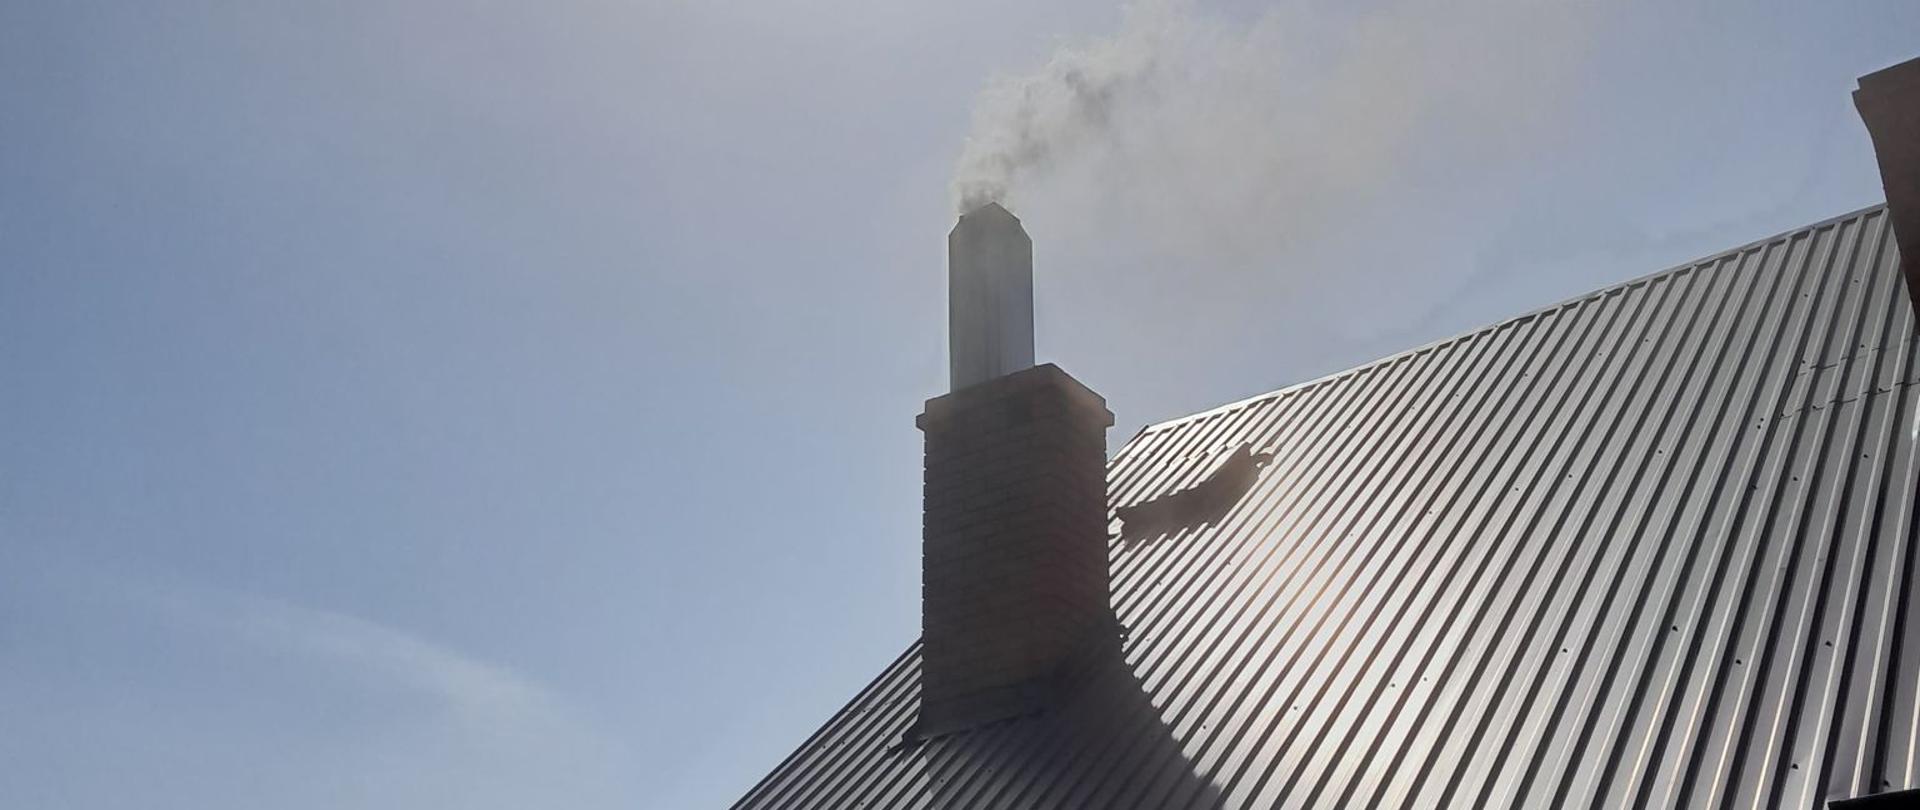 Zdjęcie przedstawia przewód dymowy, gdzie zapaliła się sadza. Widać kłęby ciemnego dymu wydobywającego się z komina